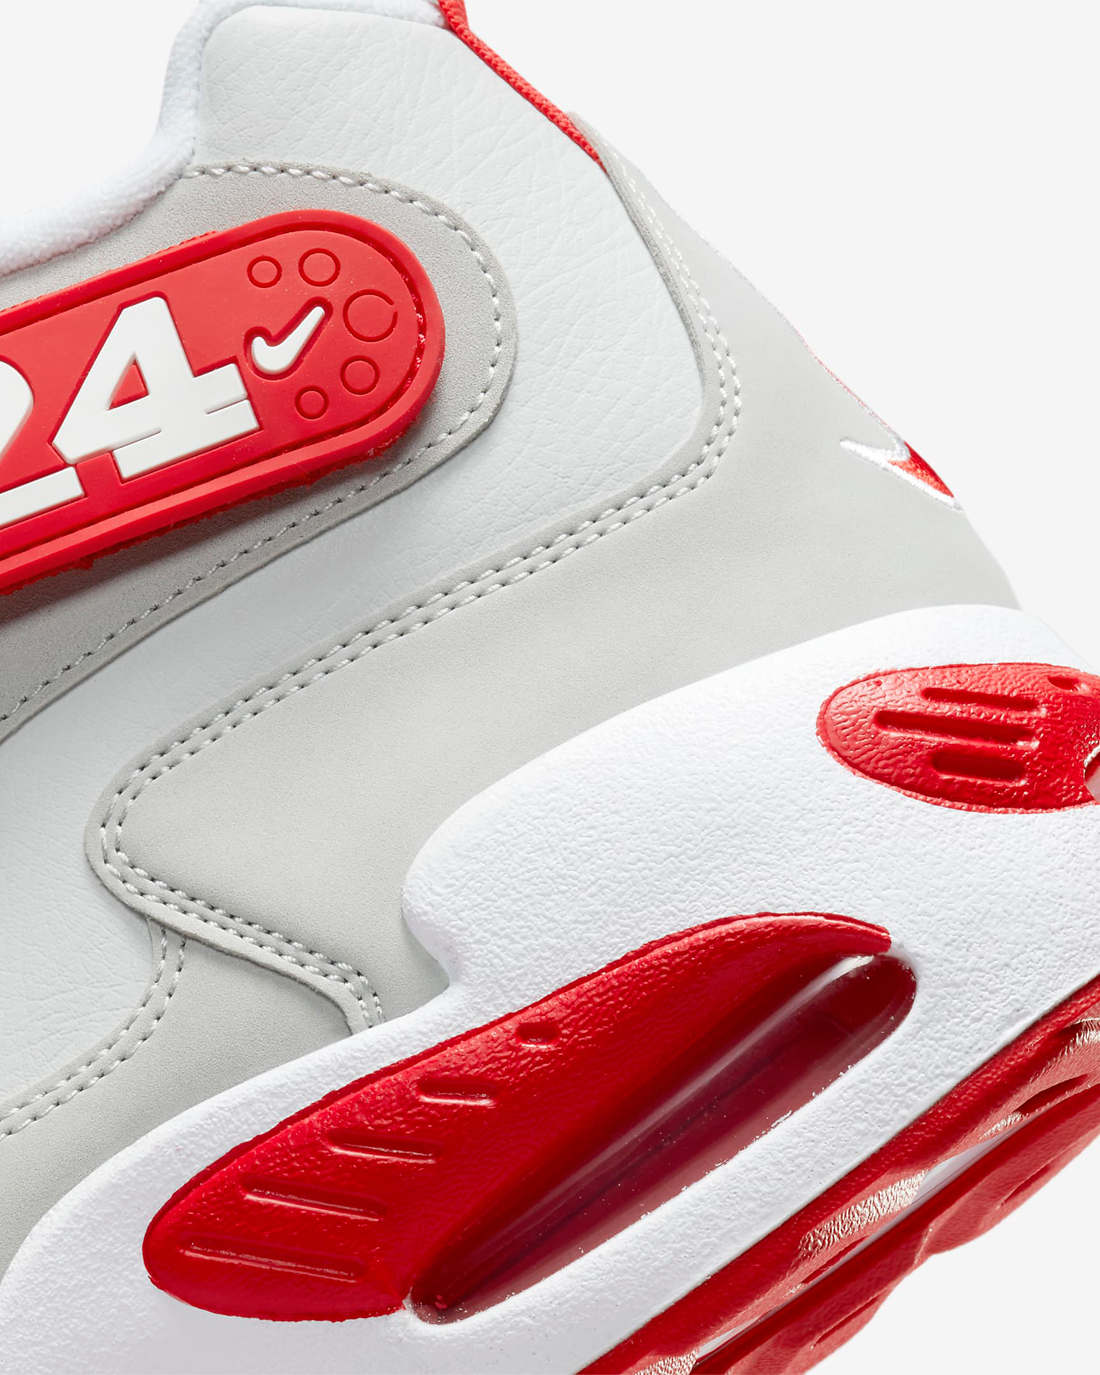 Nike-Air-Griffey-Max-1-Cincinnati-Reds-Release-Date-Info-8